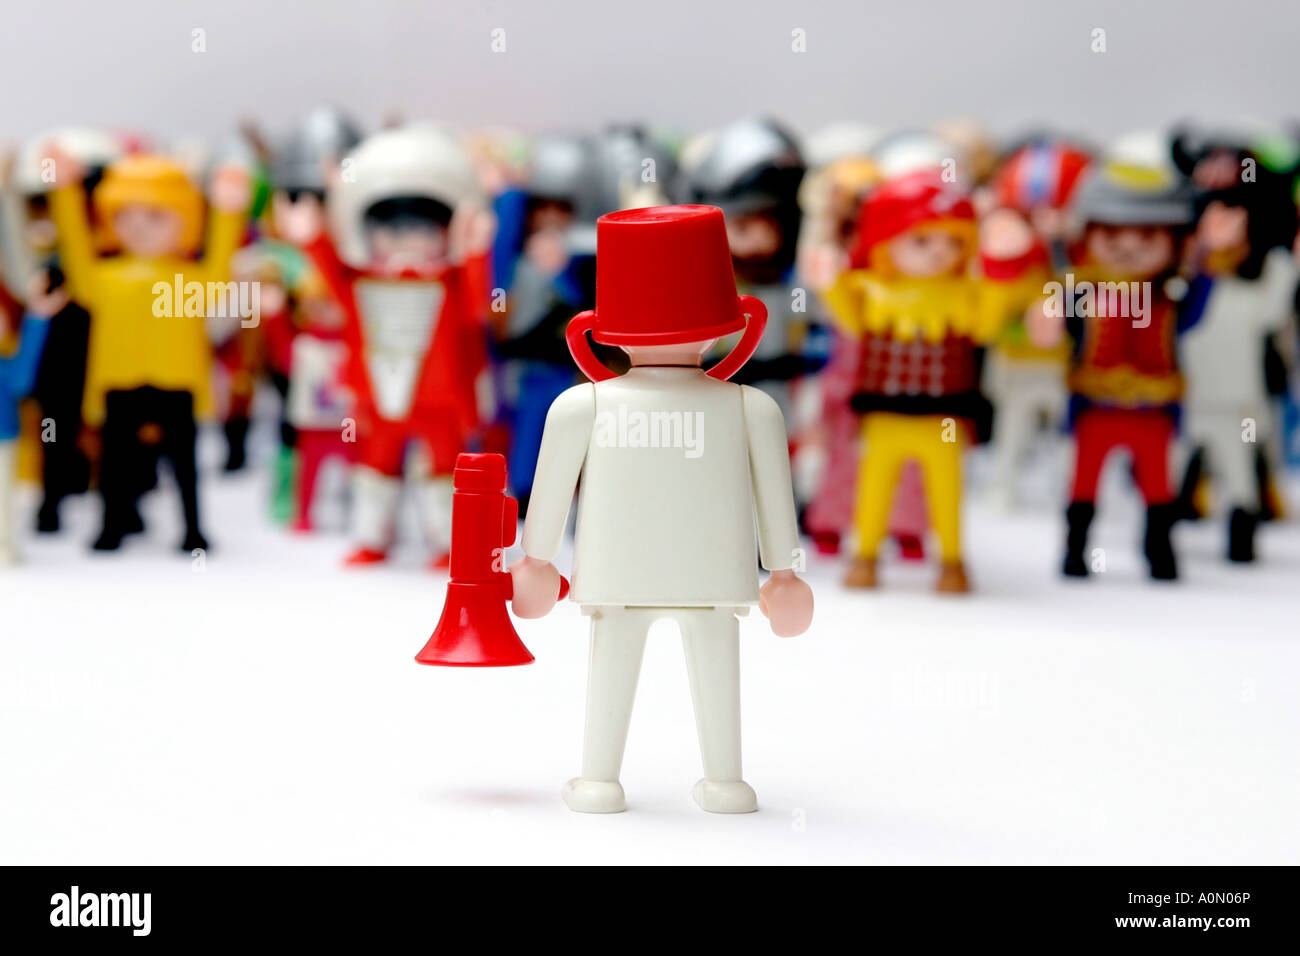 Playmobil figures -Fotos und -Bildmaterial in hoher Auflösung - Seite 2 -  Alamy